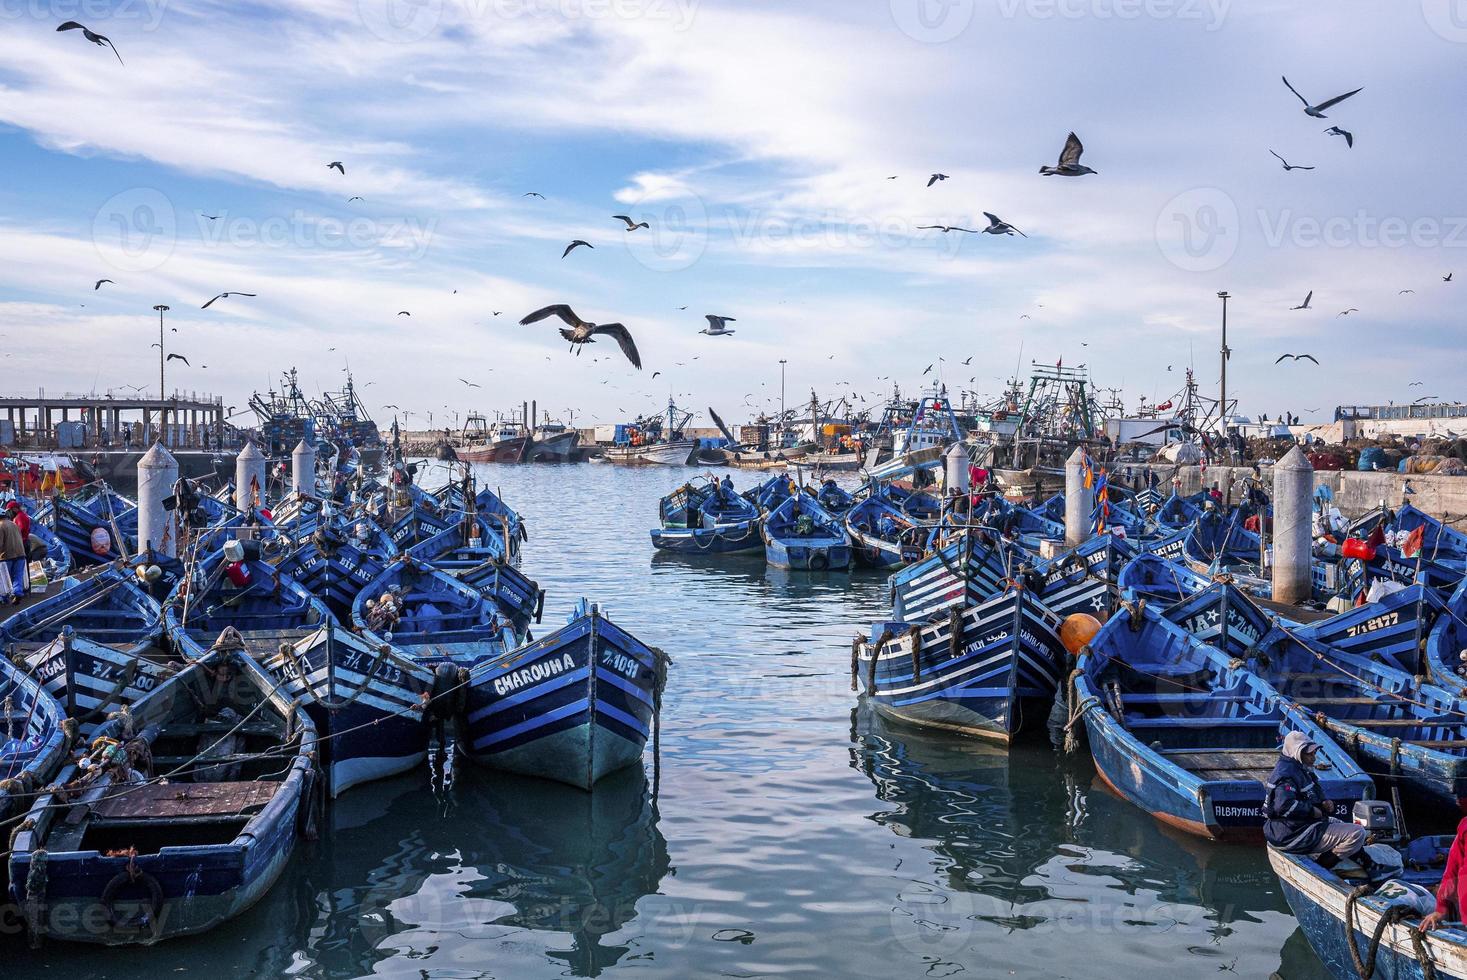 zeevogels zweven over houten blauwe vissersboten verankerd in de jachthaven foto